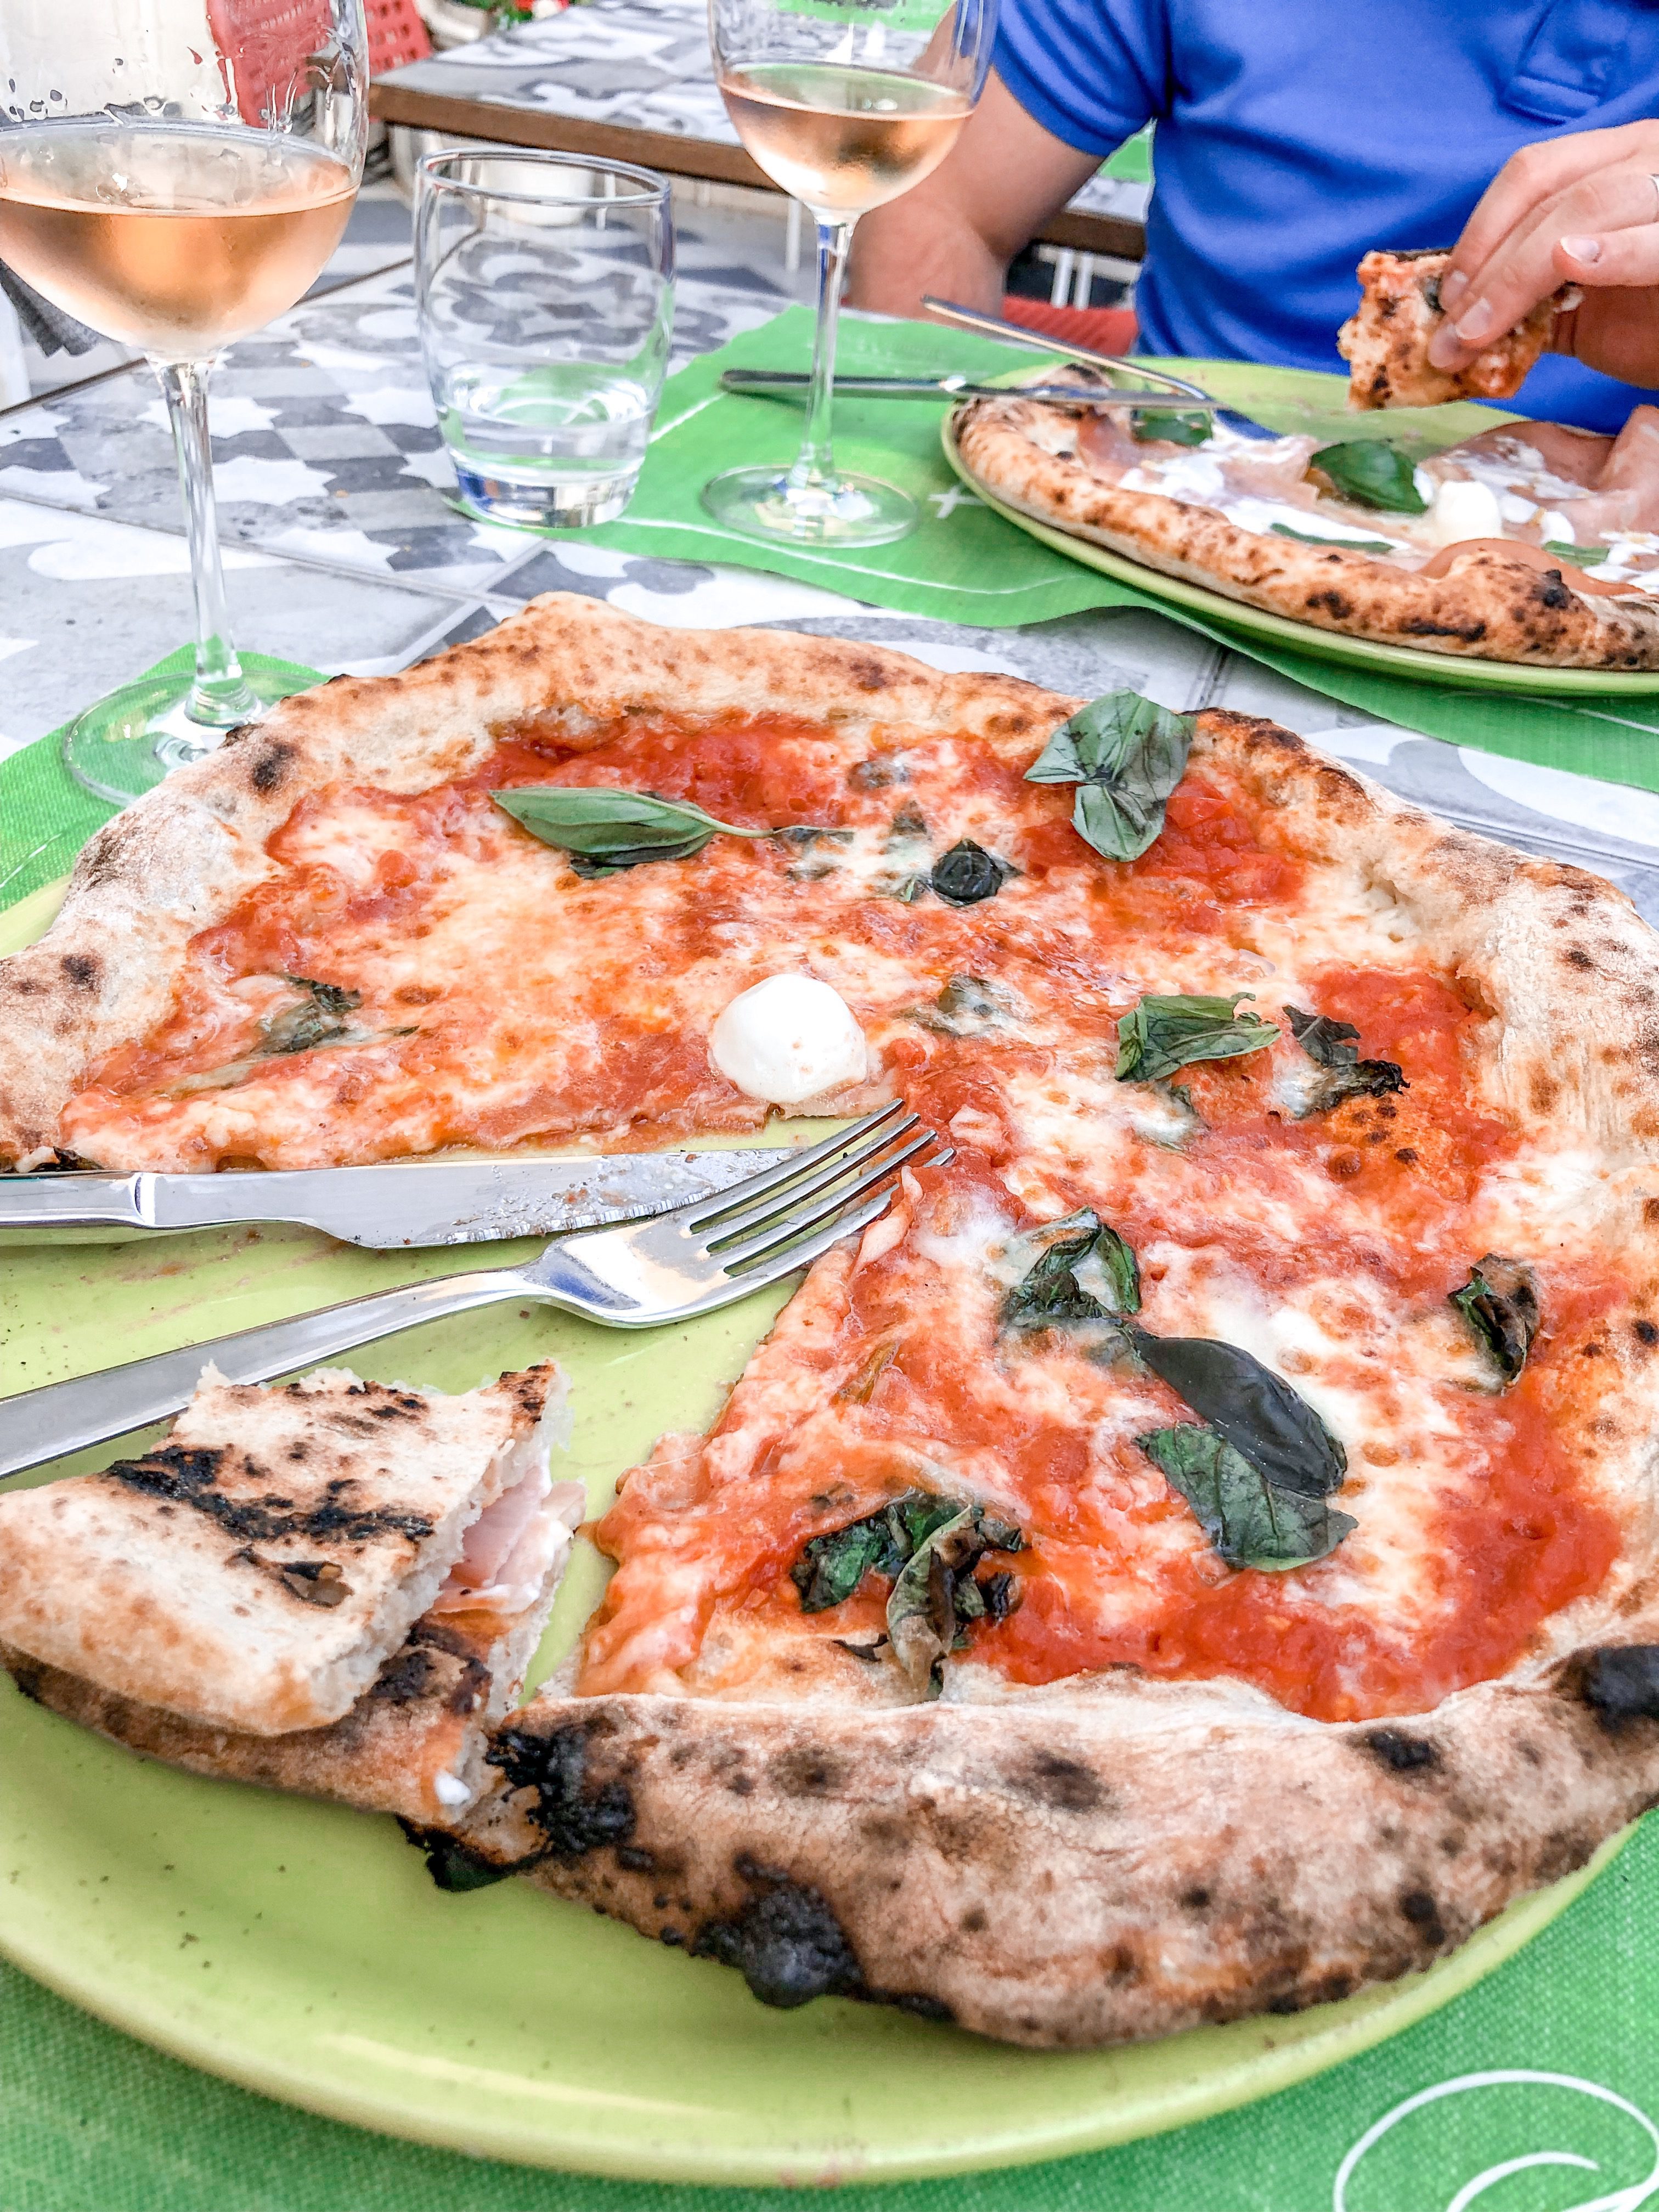 Authentic Italian Pizza Crust Recipe